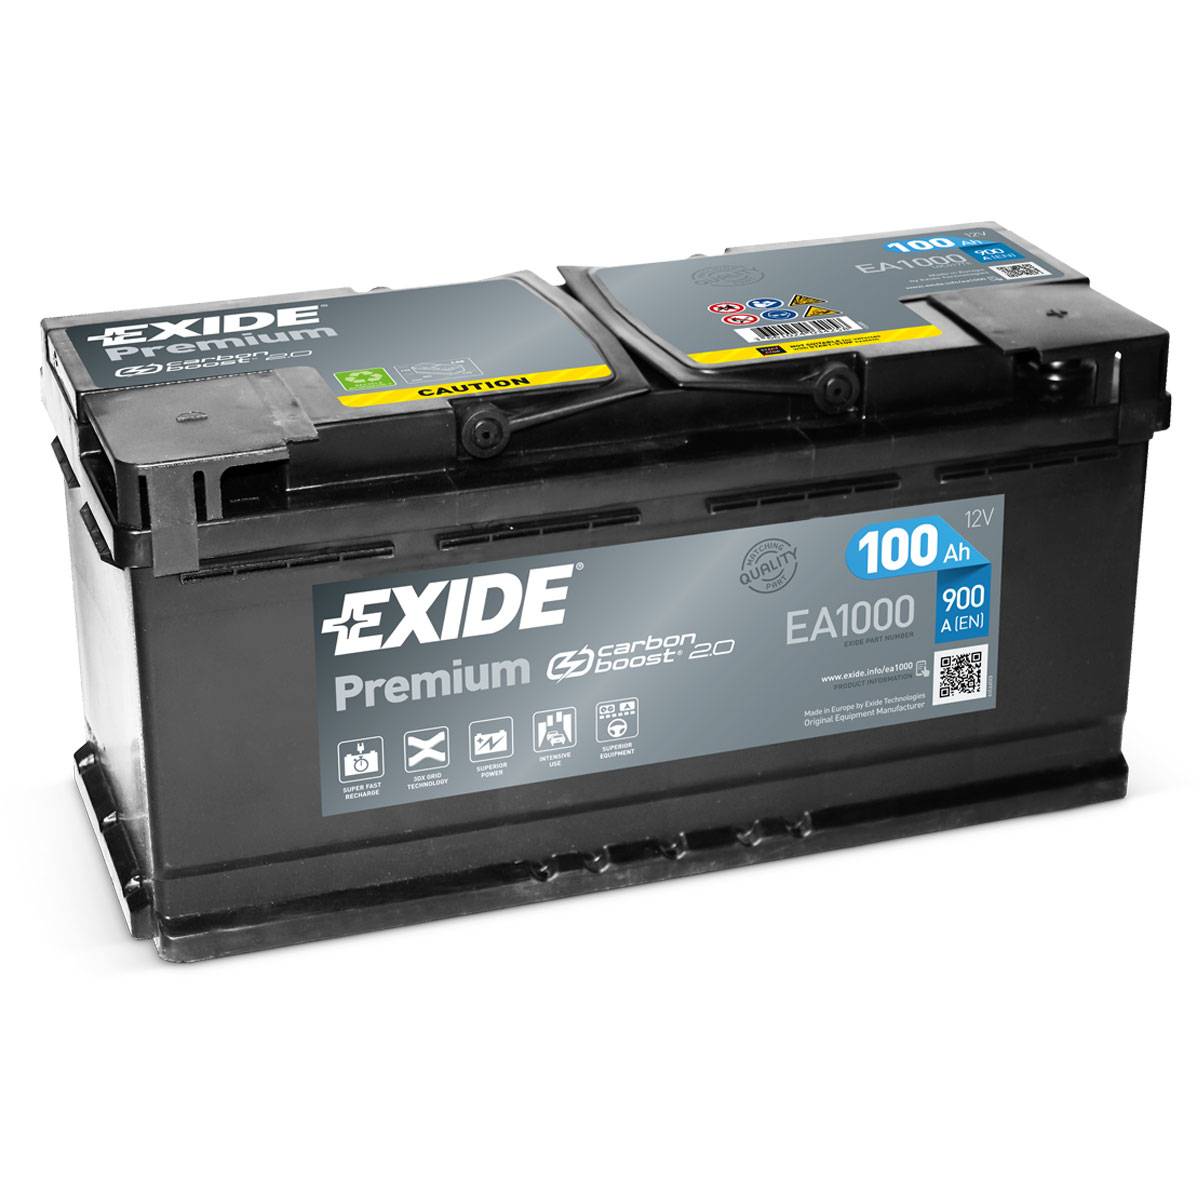 Batteria per auto Exide EA1000 Premium Carbon Boost 12V 100Ah 900A